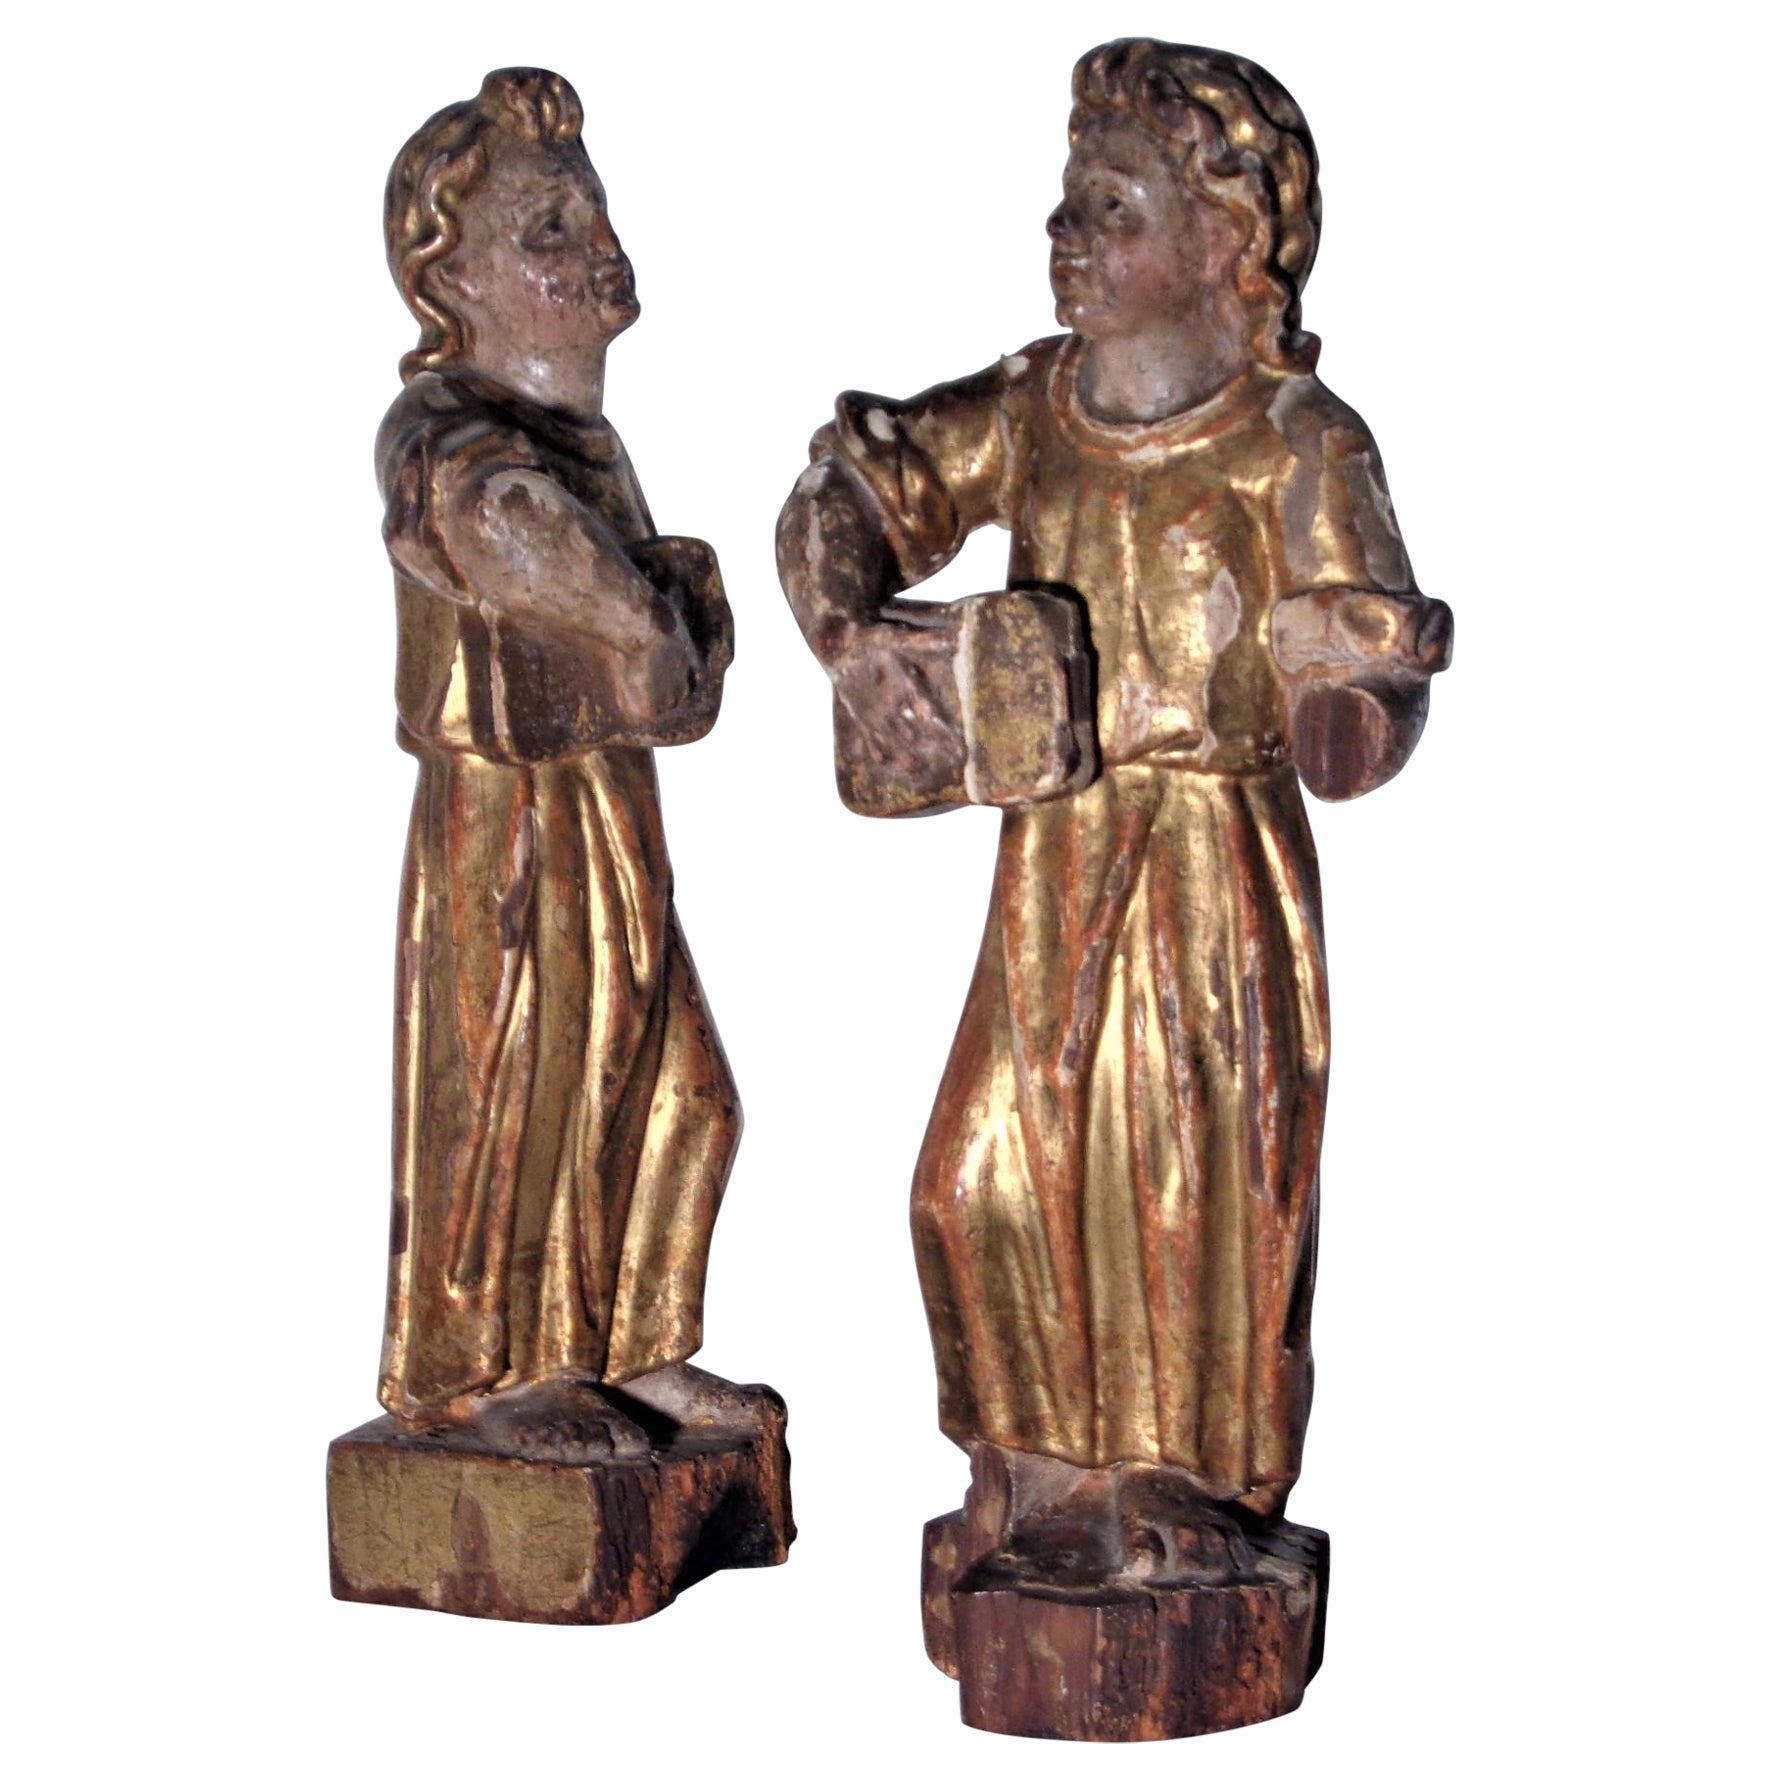  Anges italiens du XVIIIe siècle sculptés et dorés